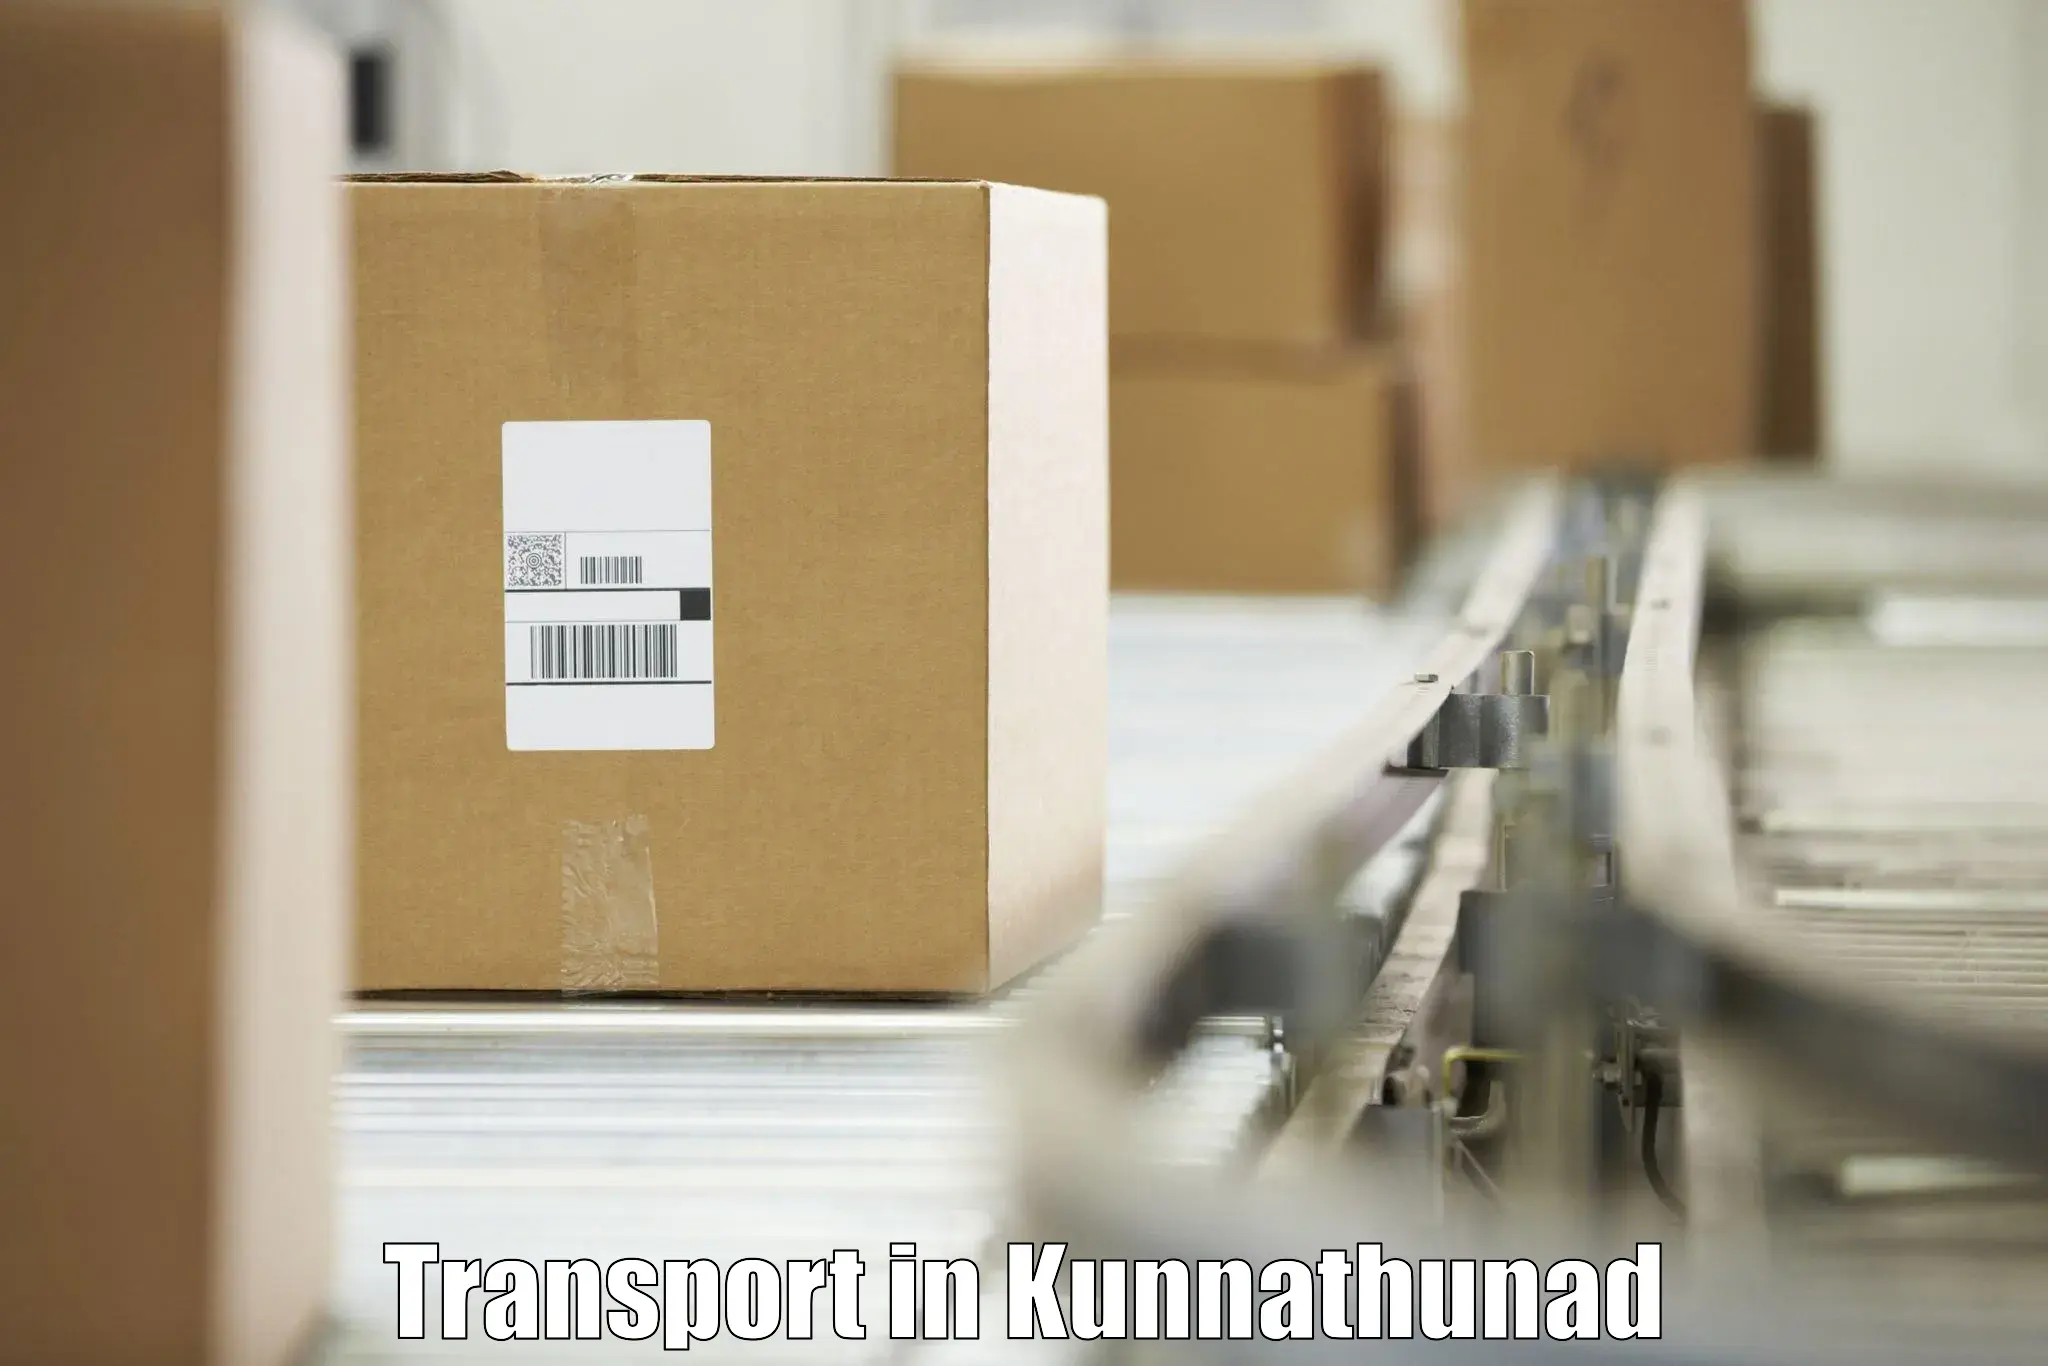 Cargo transportation services in Kunnathunad